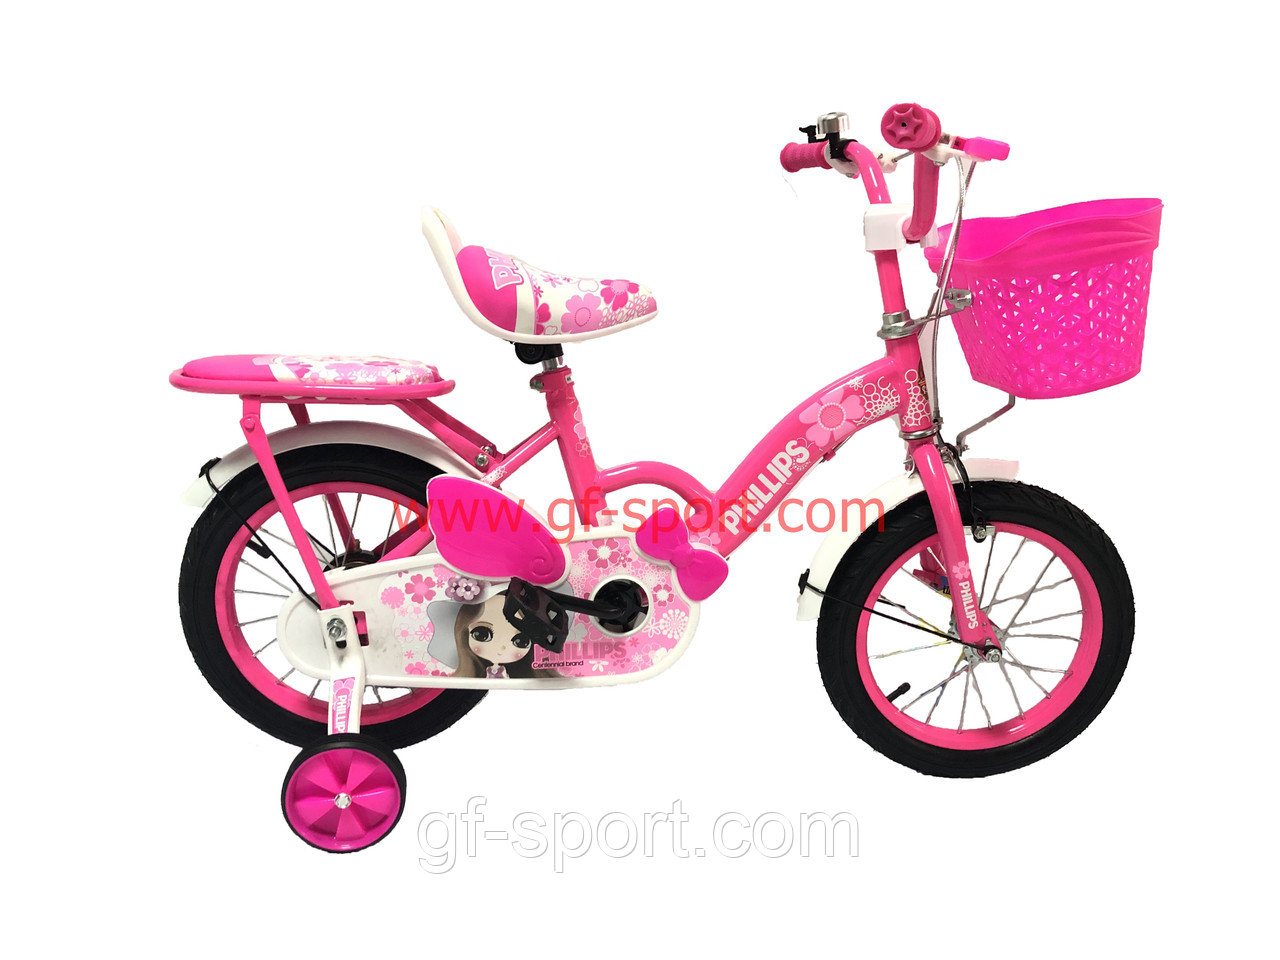 Велосипед Phillips Принцесса розовый оригинал детский с холостым ходом 14 размер